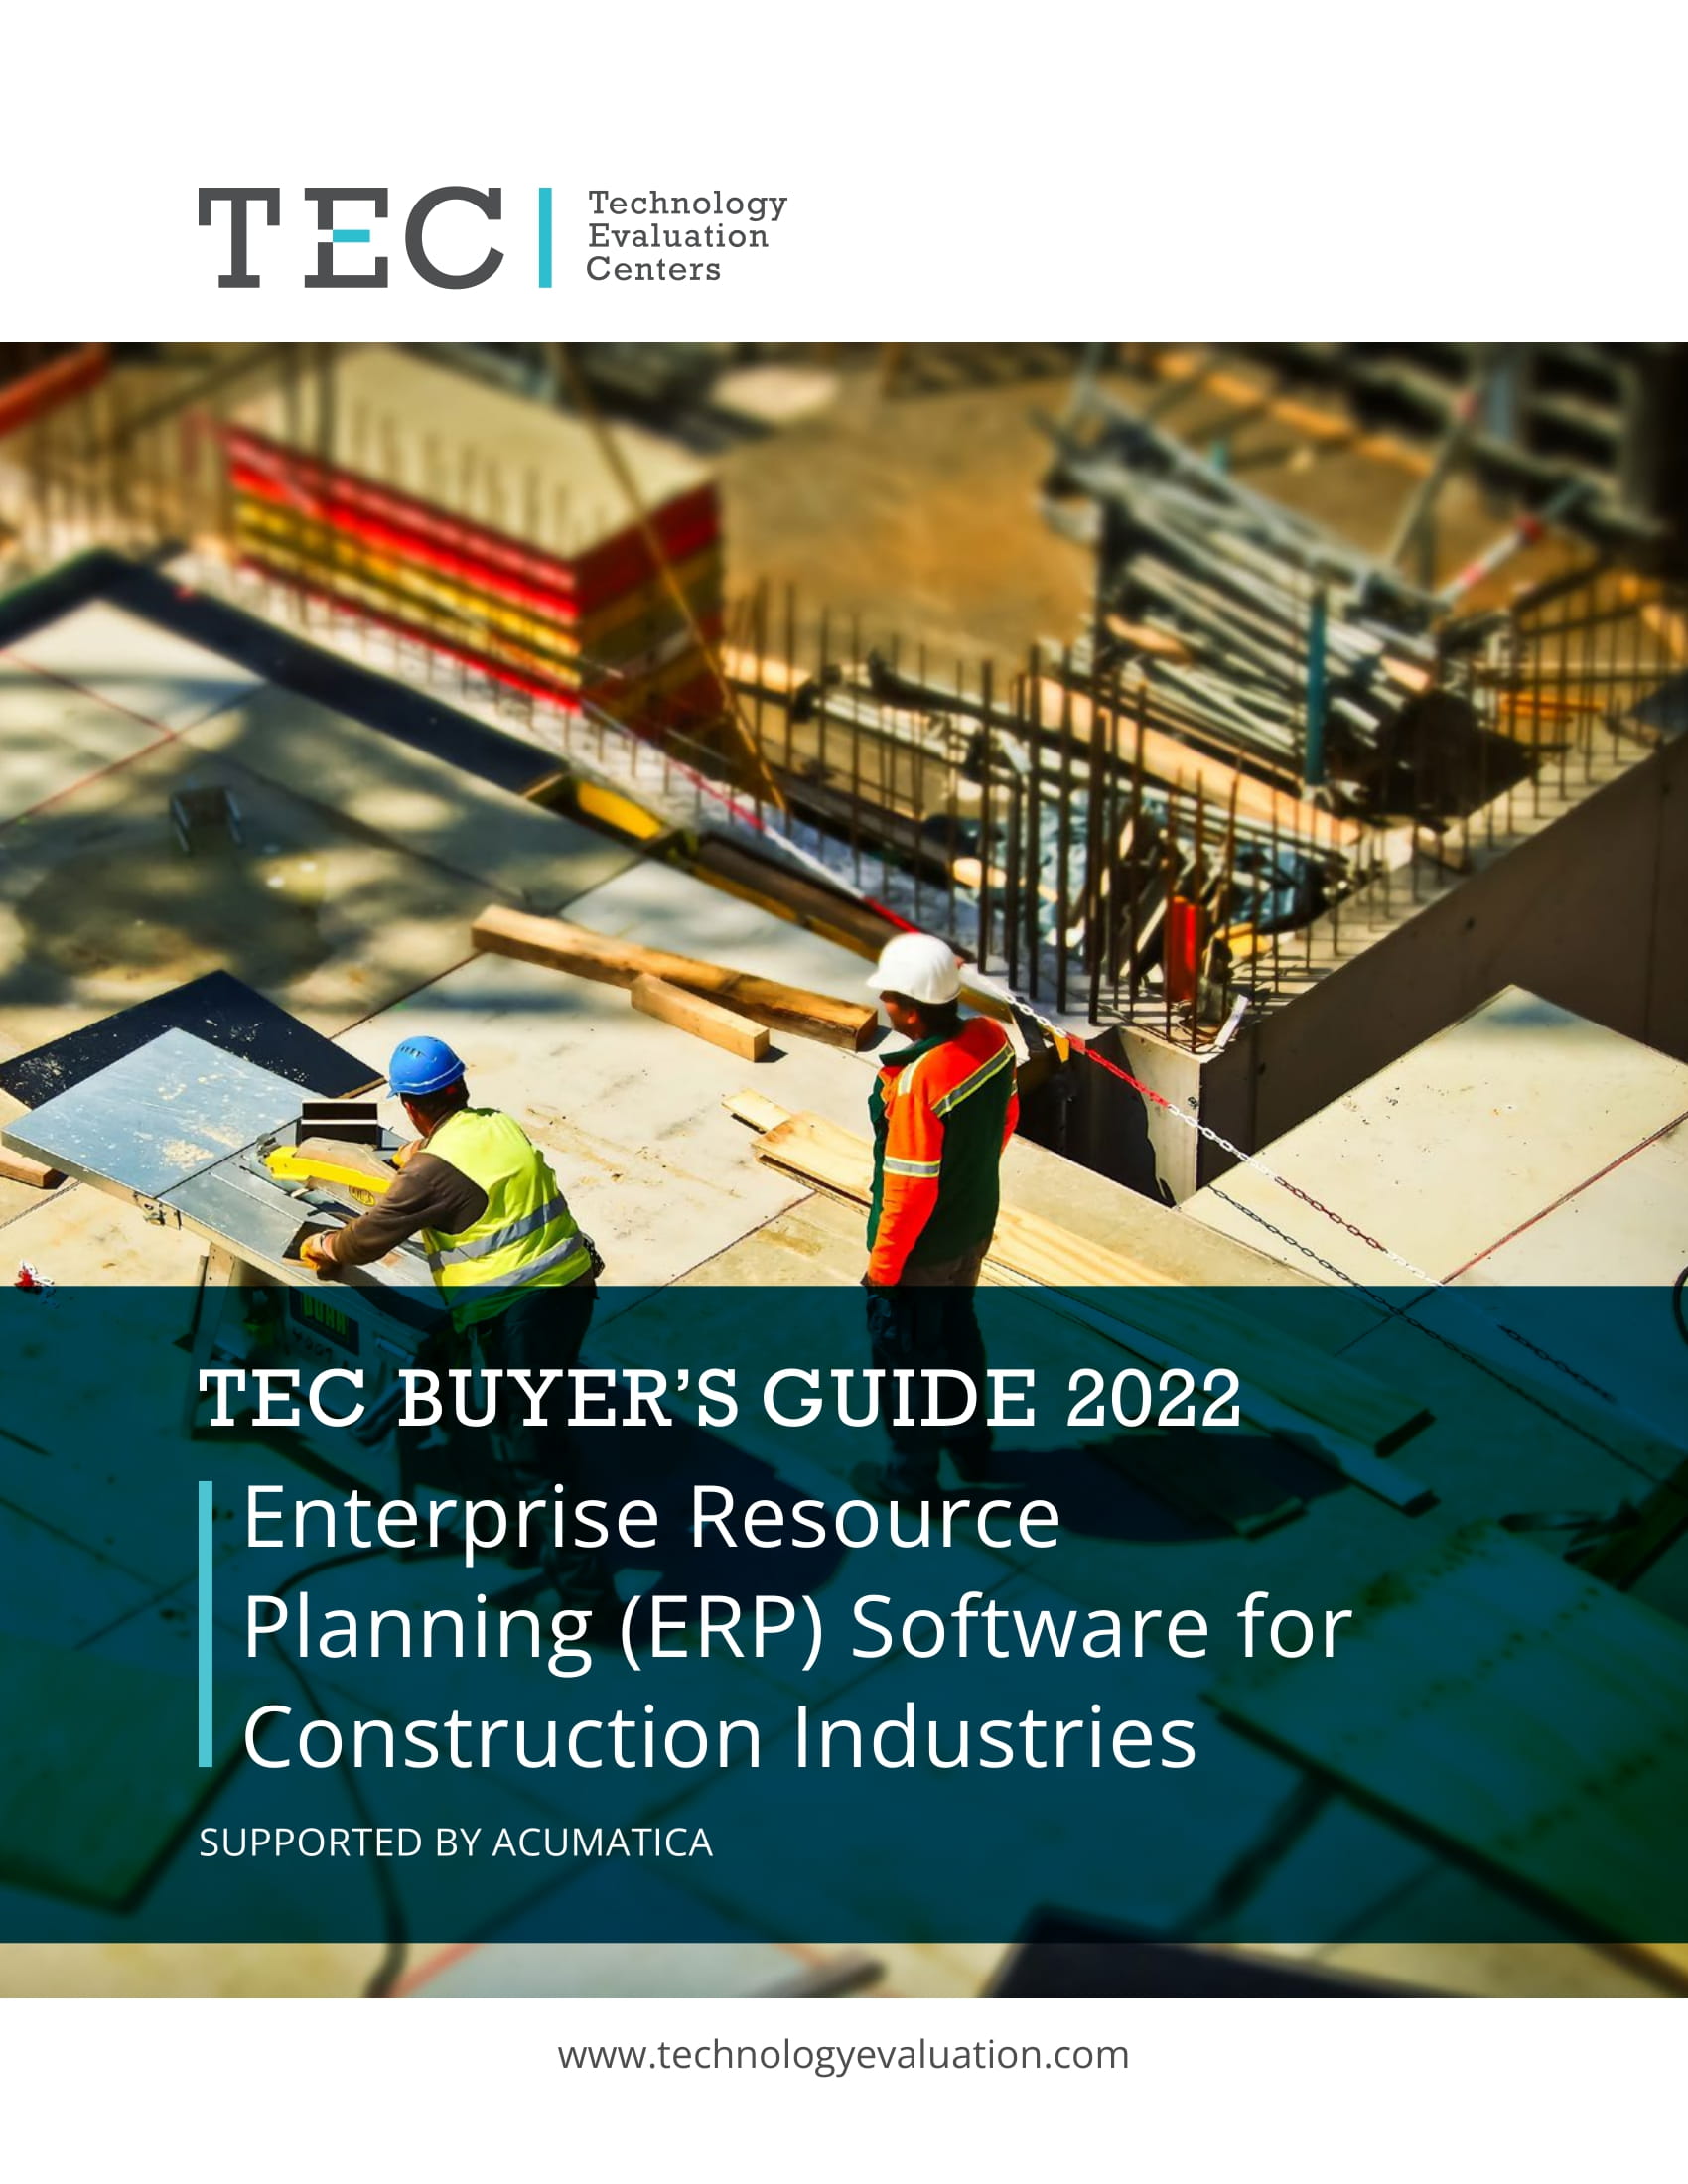 La Guía del comprador de software ERP para el sector de la construcción de Technology Evaluation Centers (TEC) presenta Acumatica.